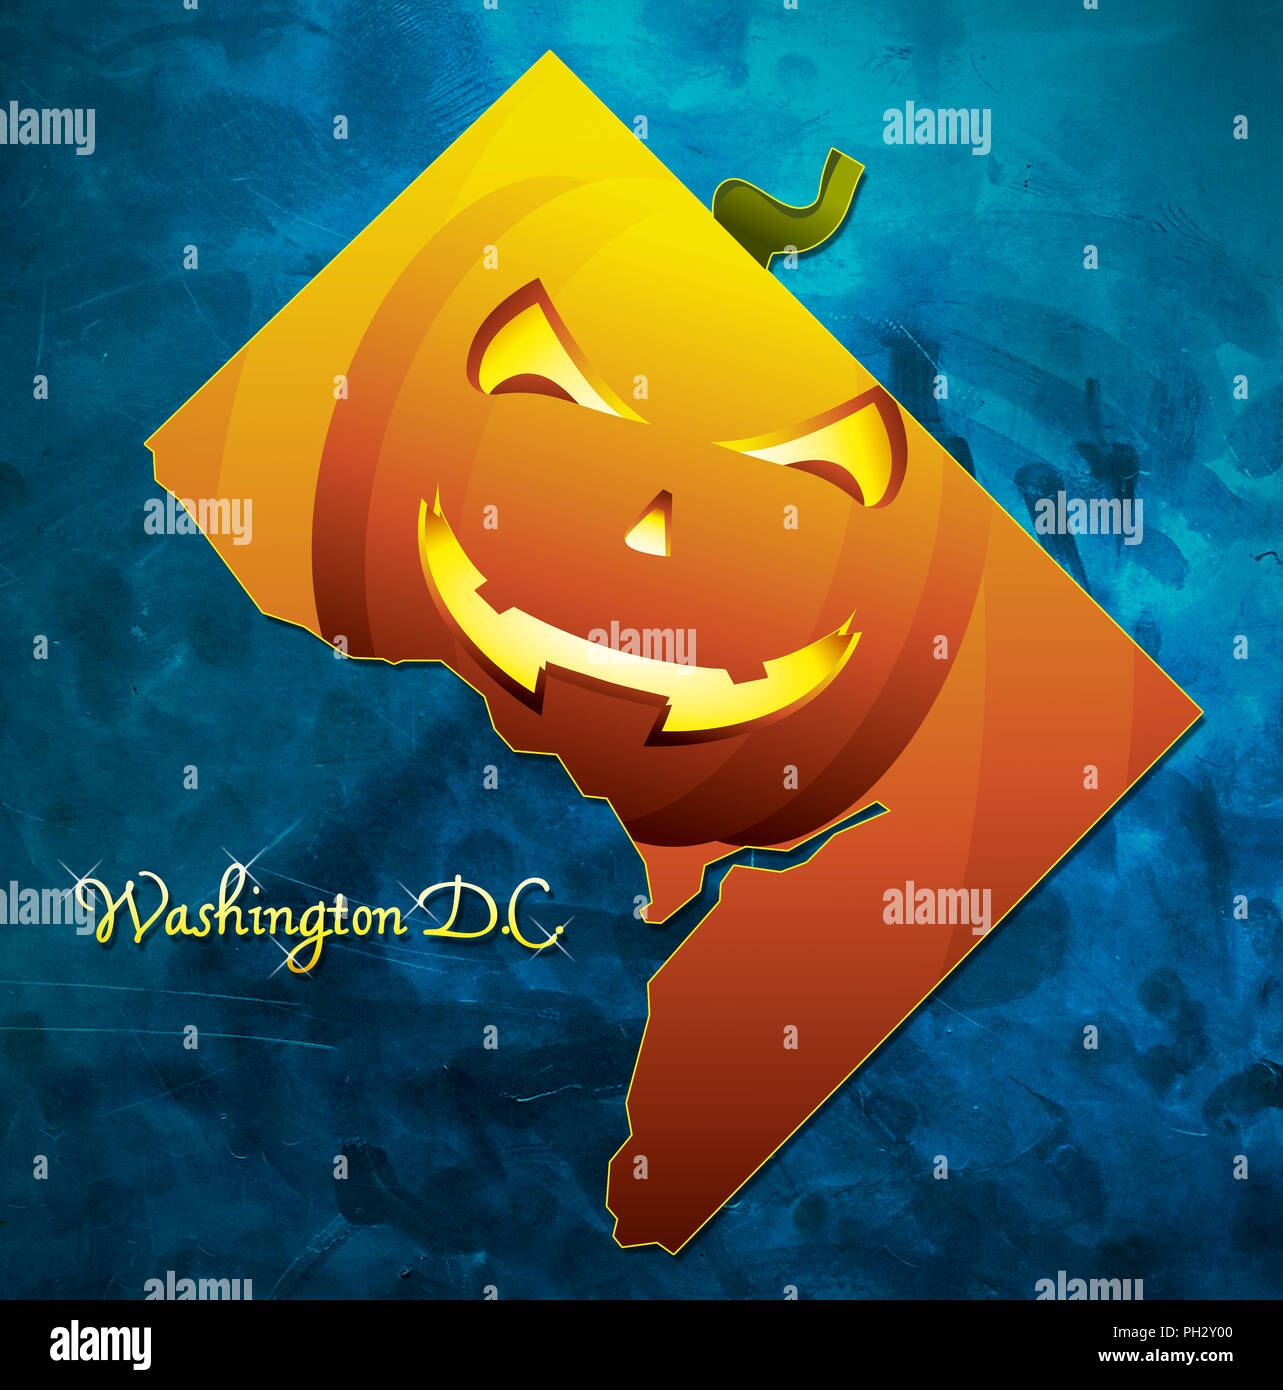 Washington DC-Karte USA mit Halloween Kürbis Gesicht Abbildung Stockfoto